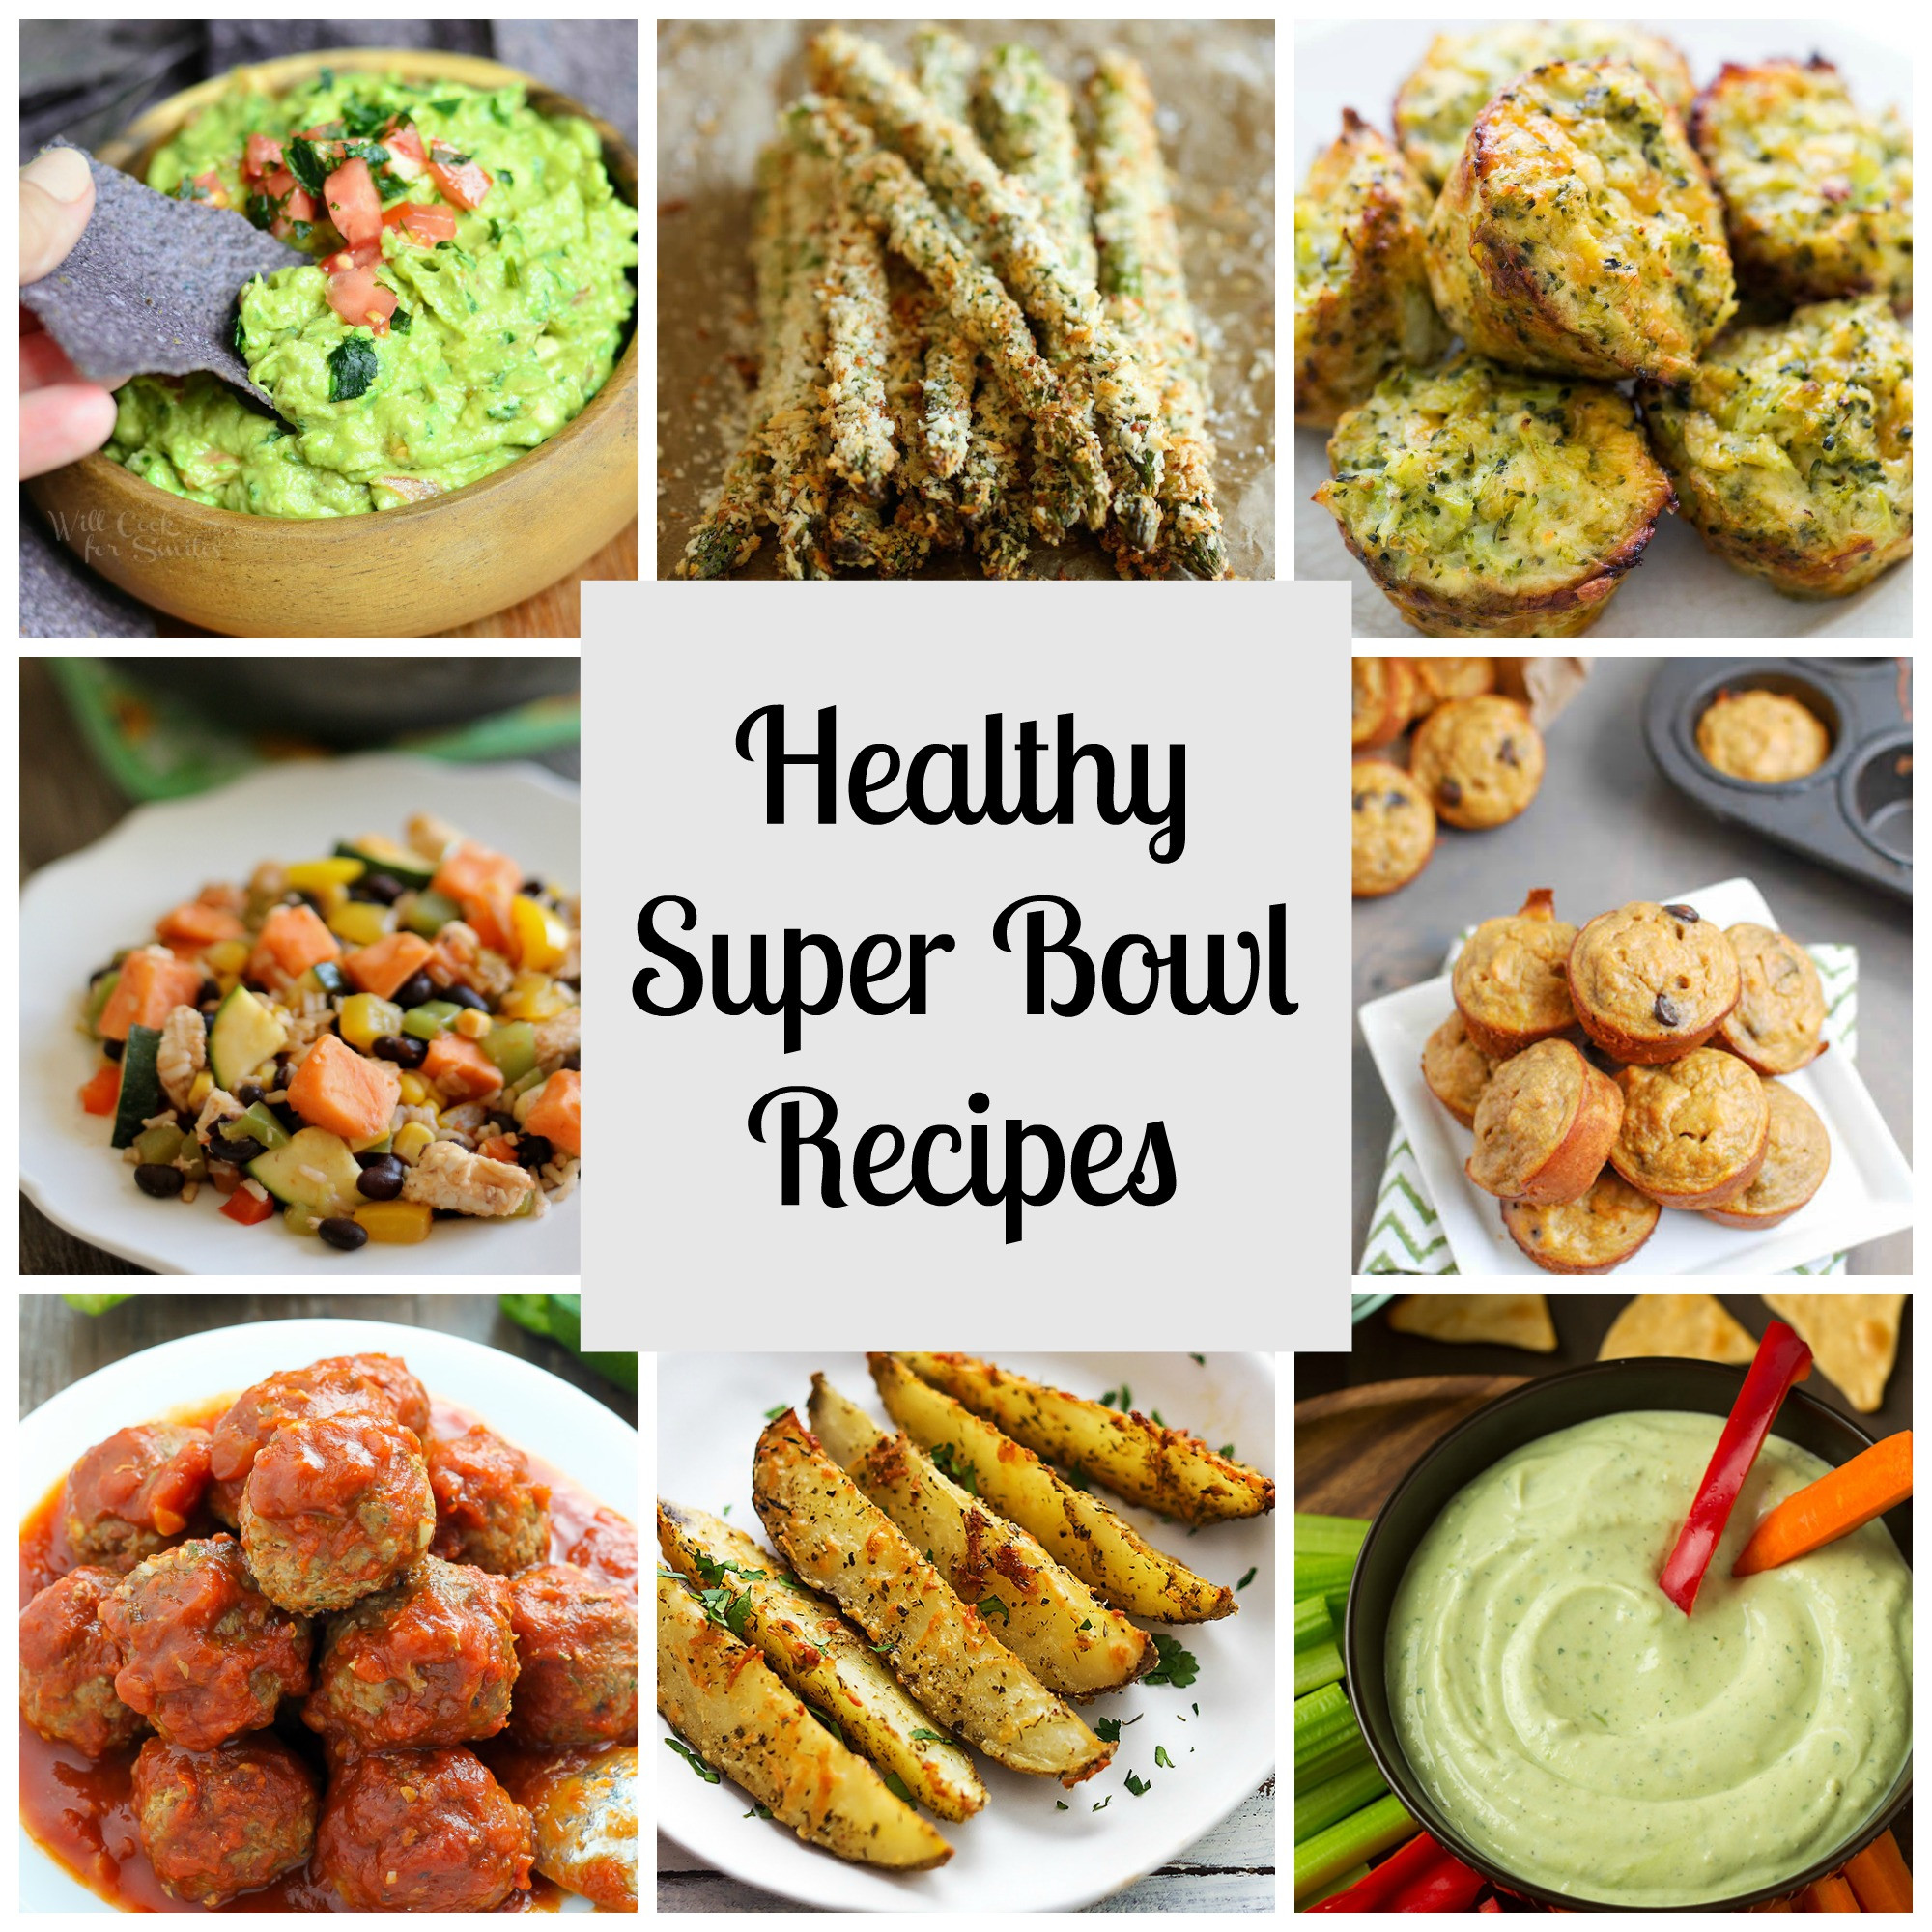 Recipes For Super Bowl
 Healthy Super Bowl Recipes RunEatSnap